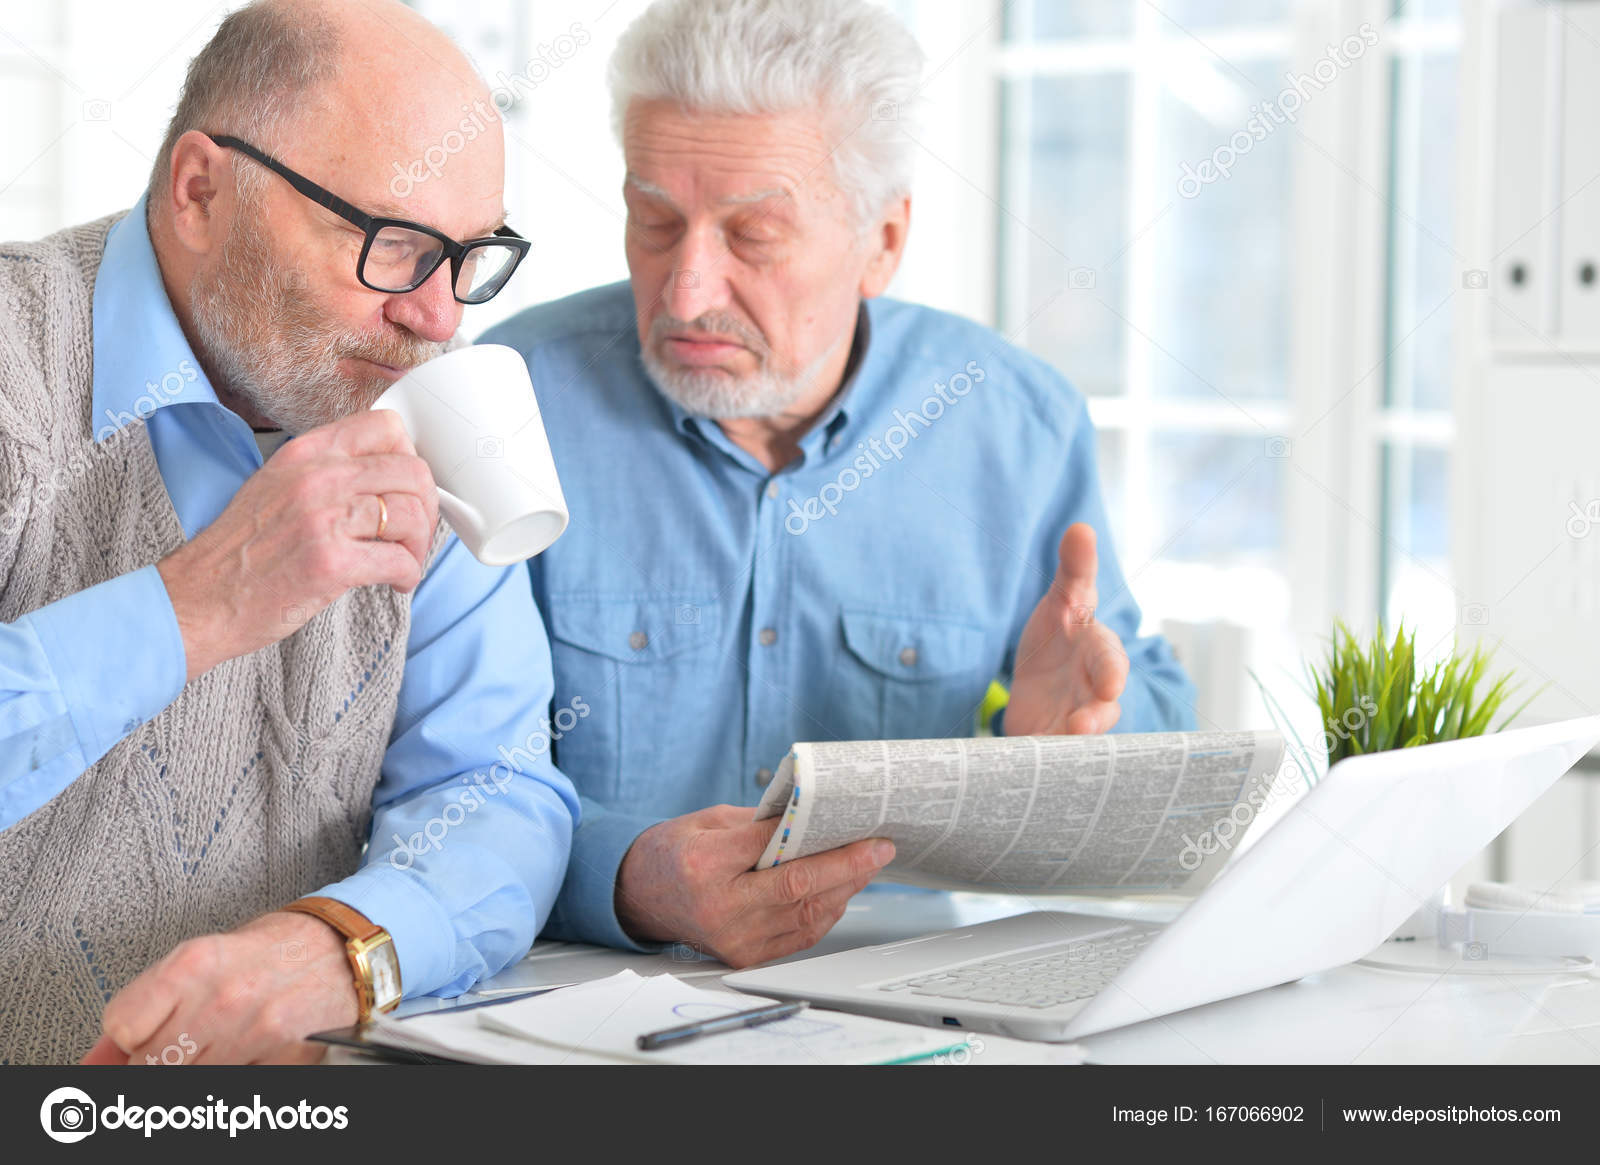 Senioren lesen Zeitung - Stockfotografie: lizenzfreie Fotos © aletia